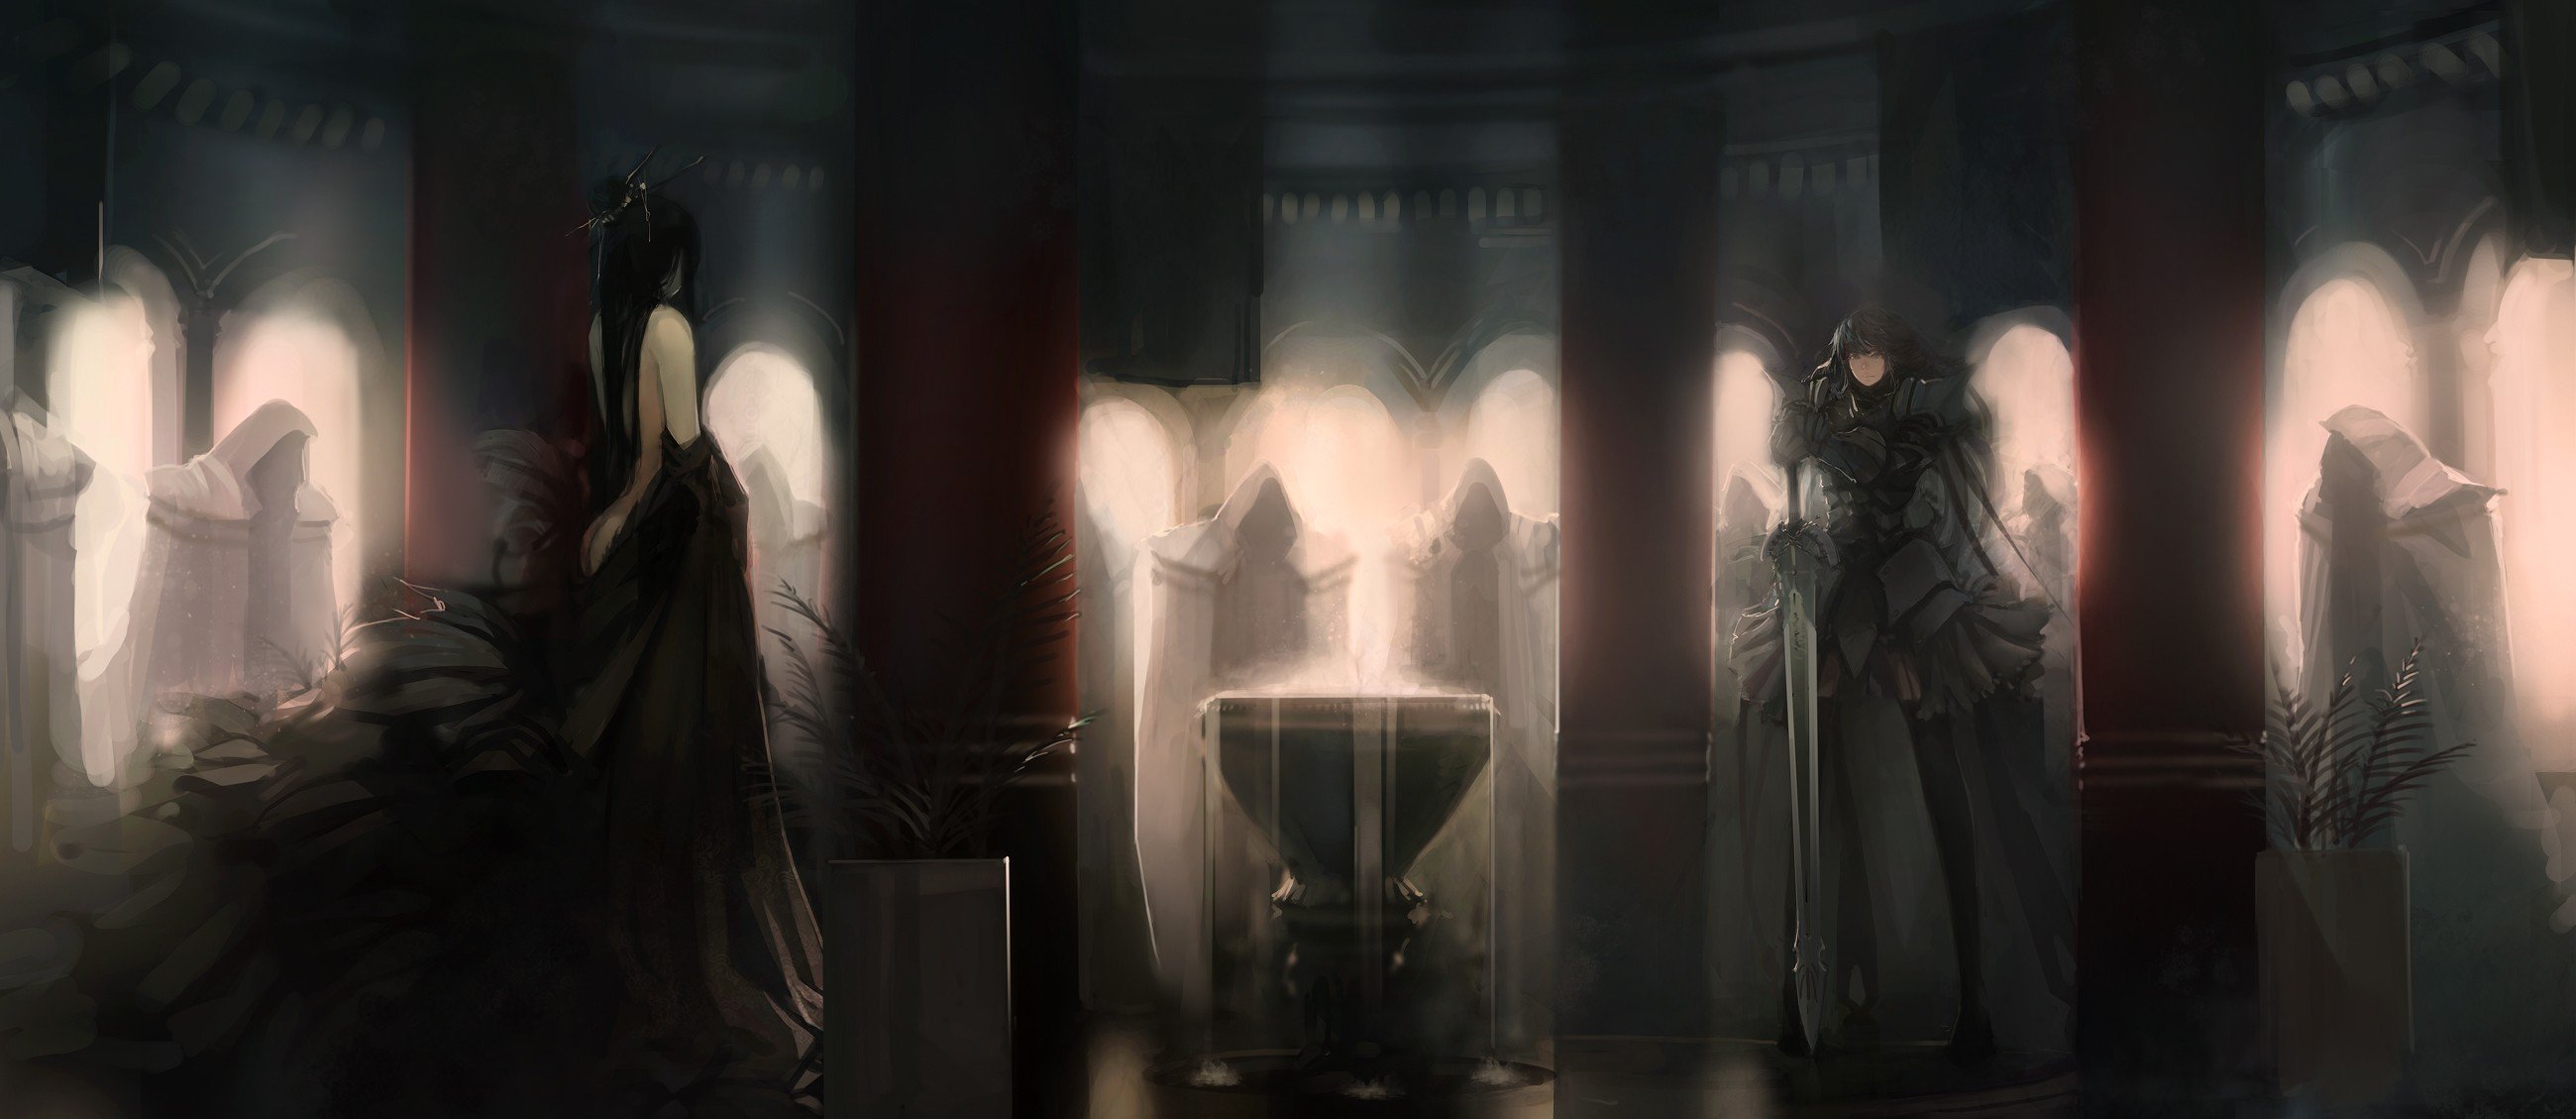 Fate Series, Fate Stay Night, Berserker (Fate Zero), Fate Zero Wallpaper